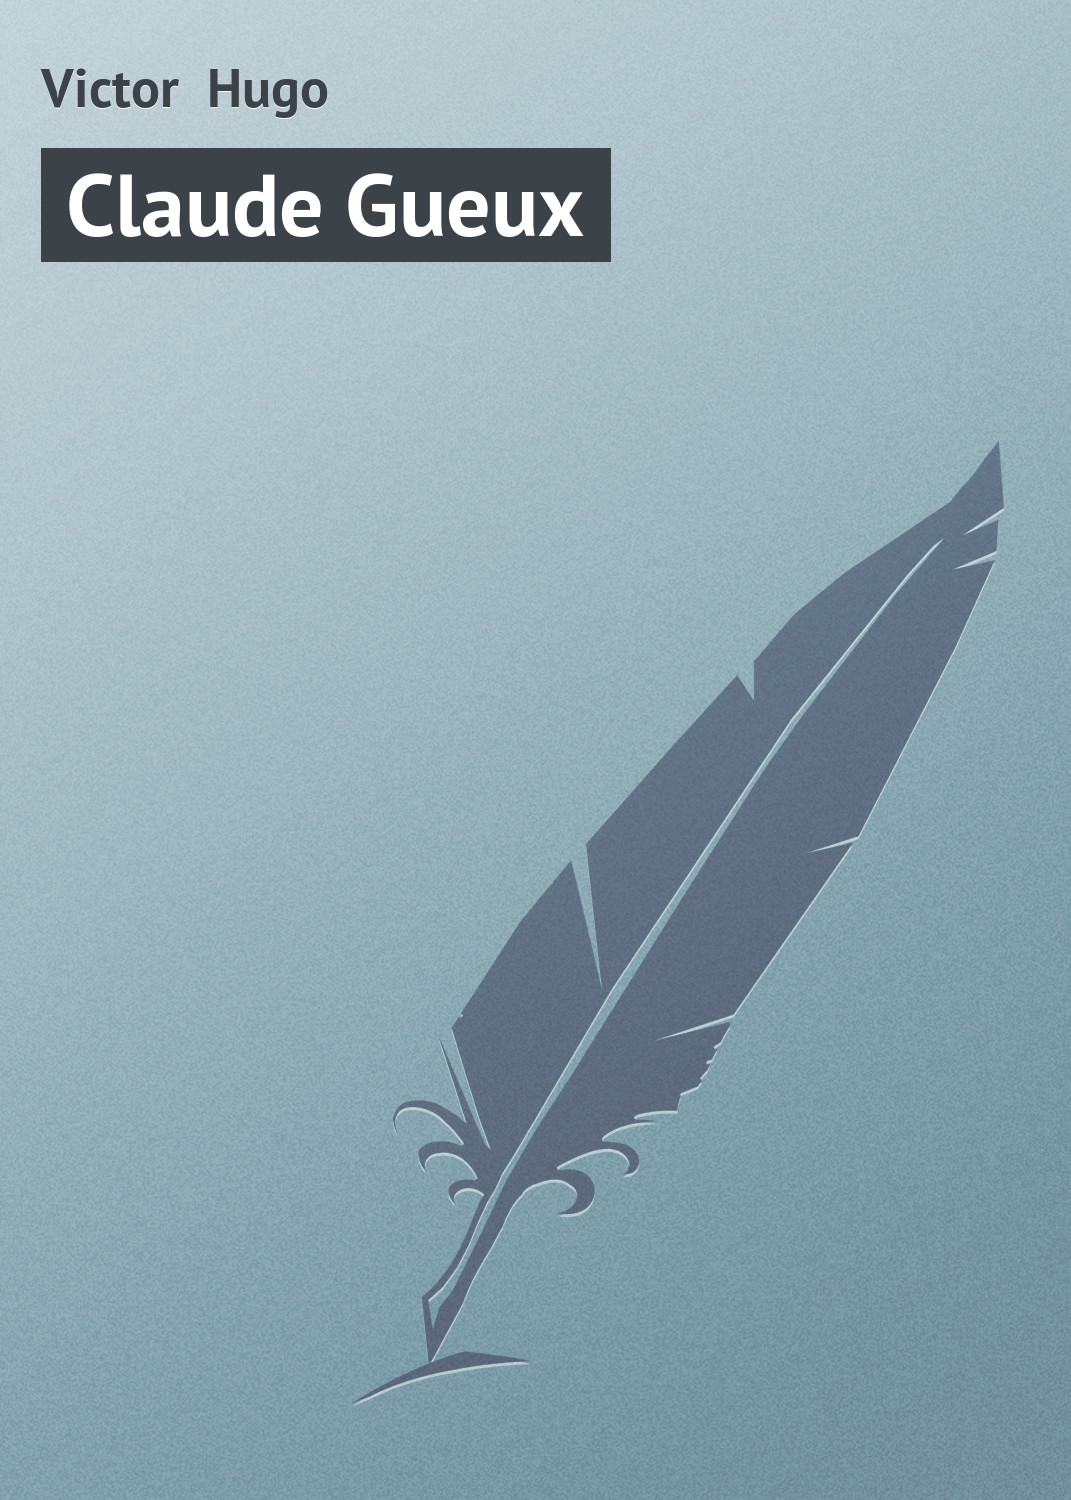 Книга Claude Gueux из серии , созданная Victor Hugo, может относится к жанру Зарубежная старинная литература, Зарубежная классика. Стоимость электронной книги Claude Gueux с идентификатором 21105078 составляет 5.99 руб.